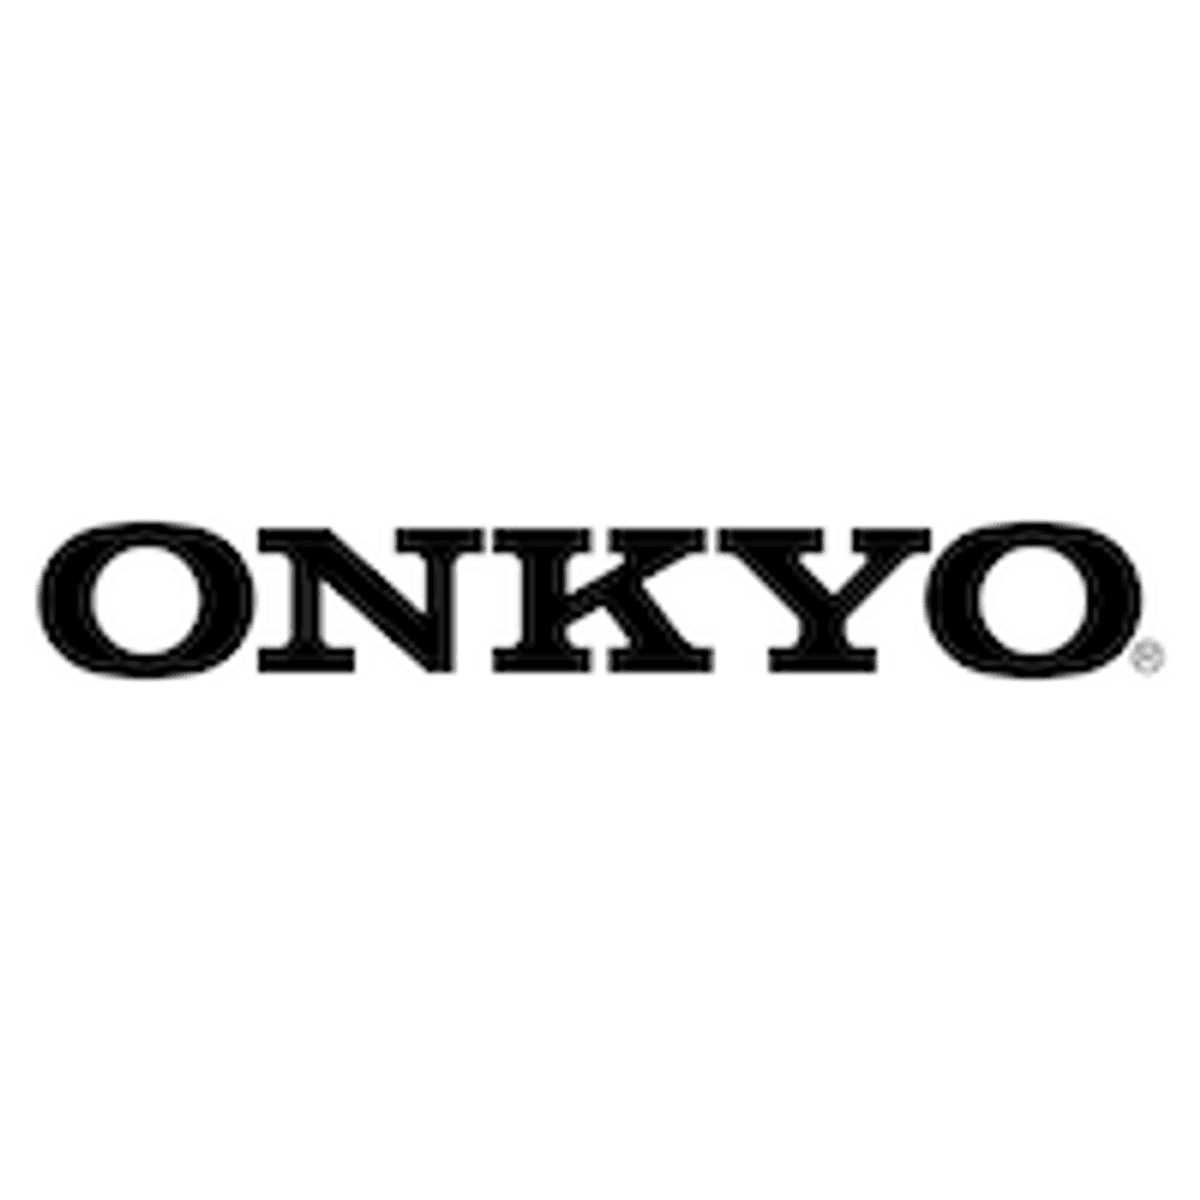 Hifi-bedrijf Onkyo vraagt faillissement aan image